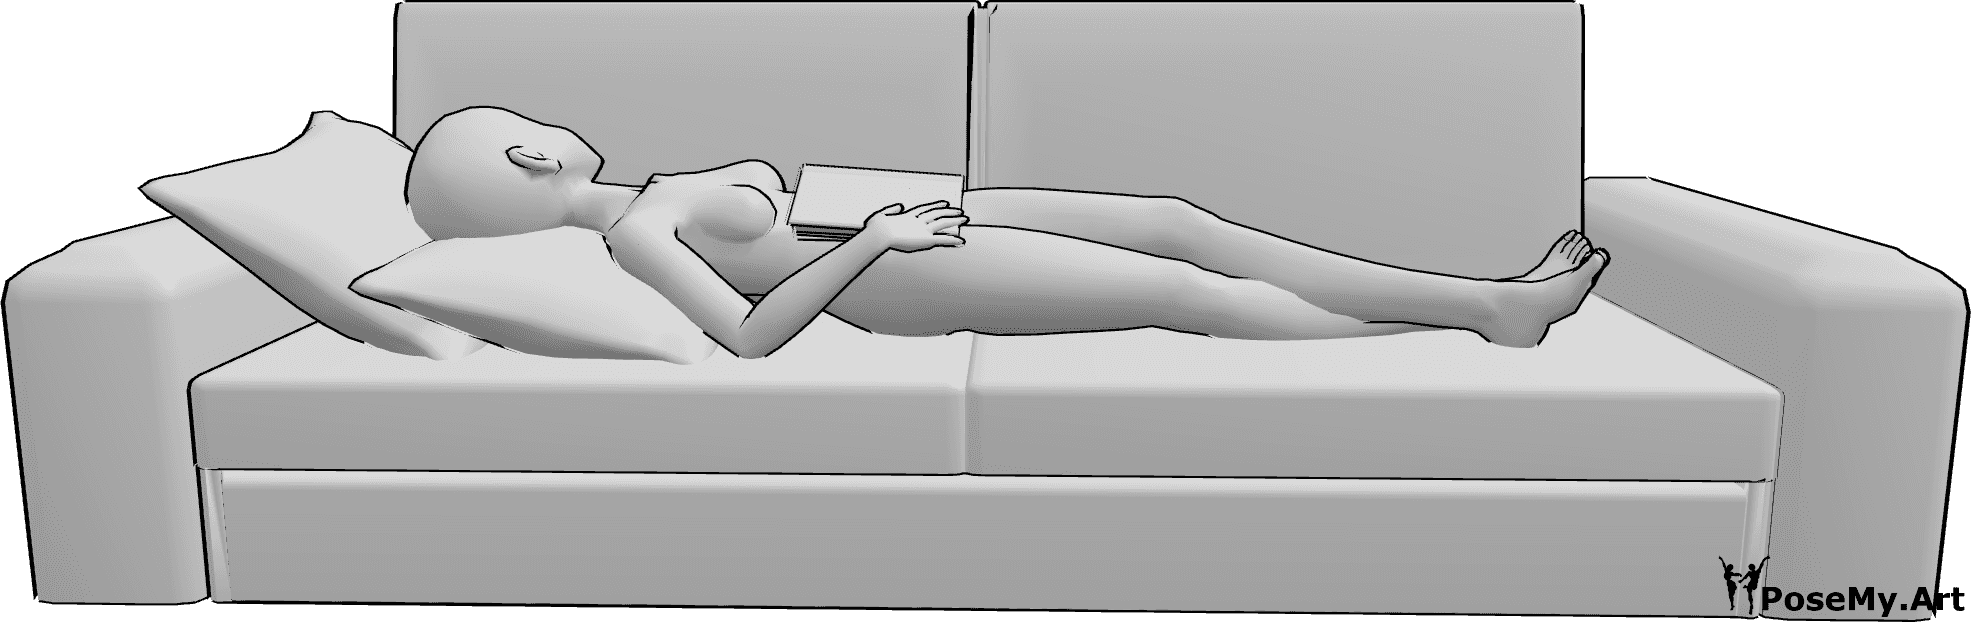 Posen-Referenz- Anime Lesung schlafende Pose - Anime-Frau liegt auf dem Rücken auf der Couch und hält ein Buch im Schlaf